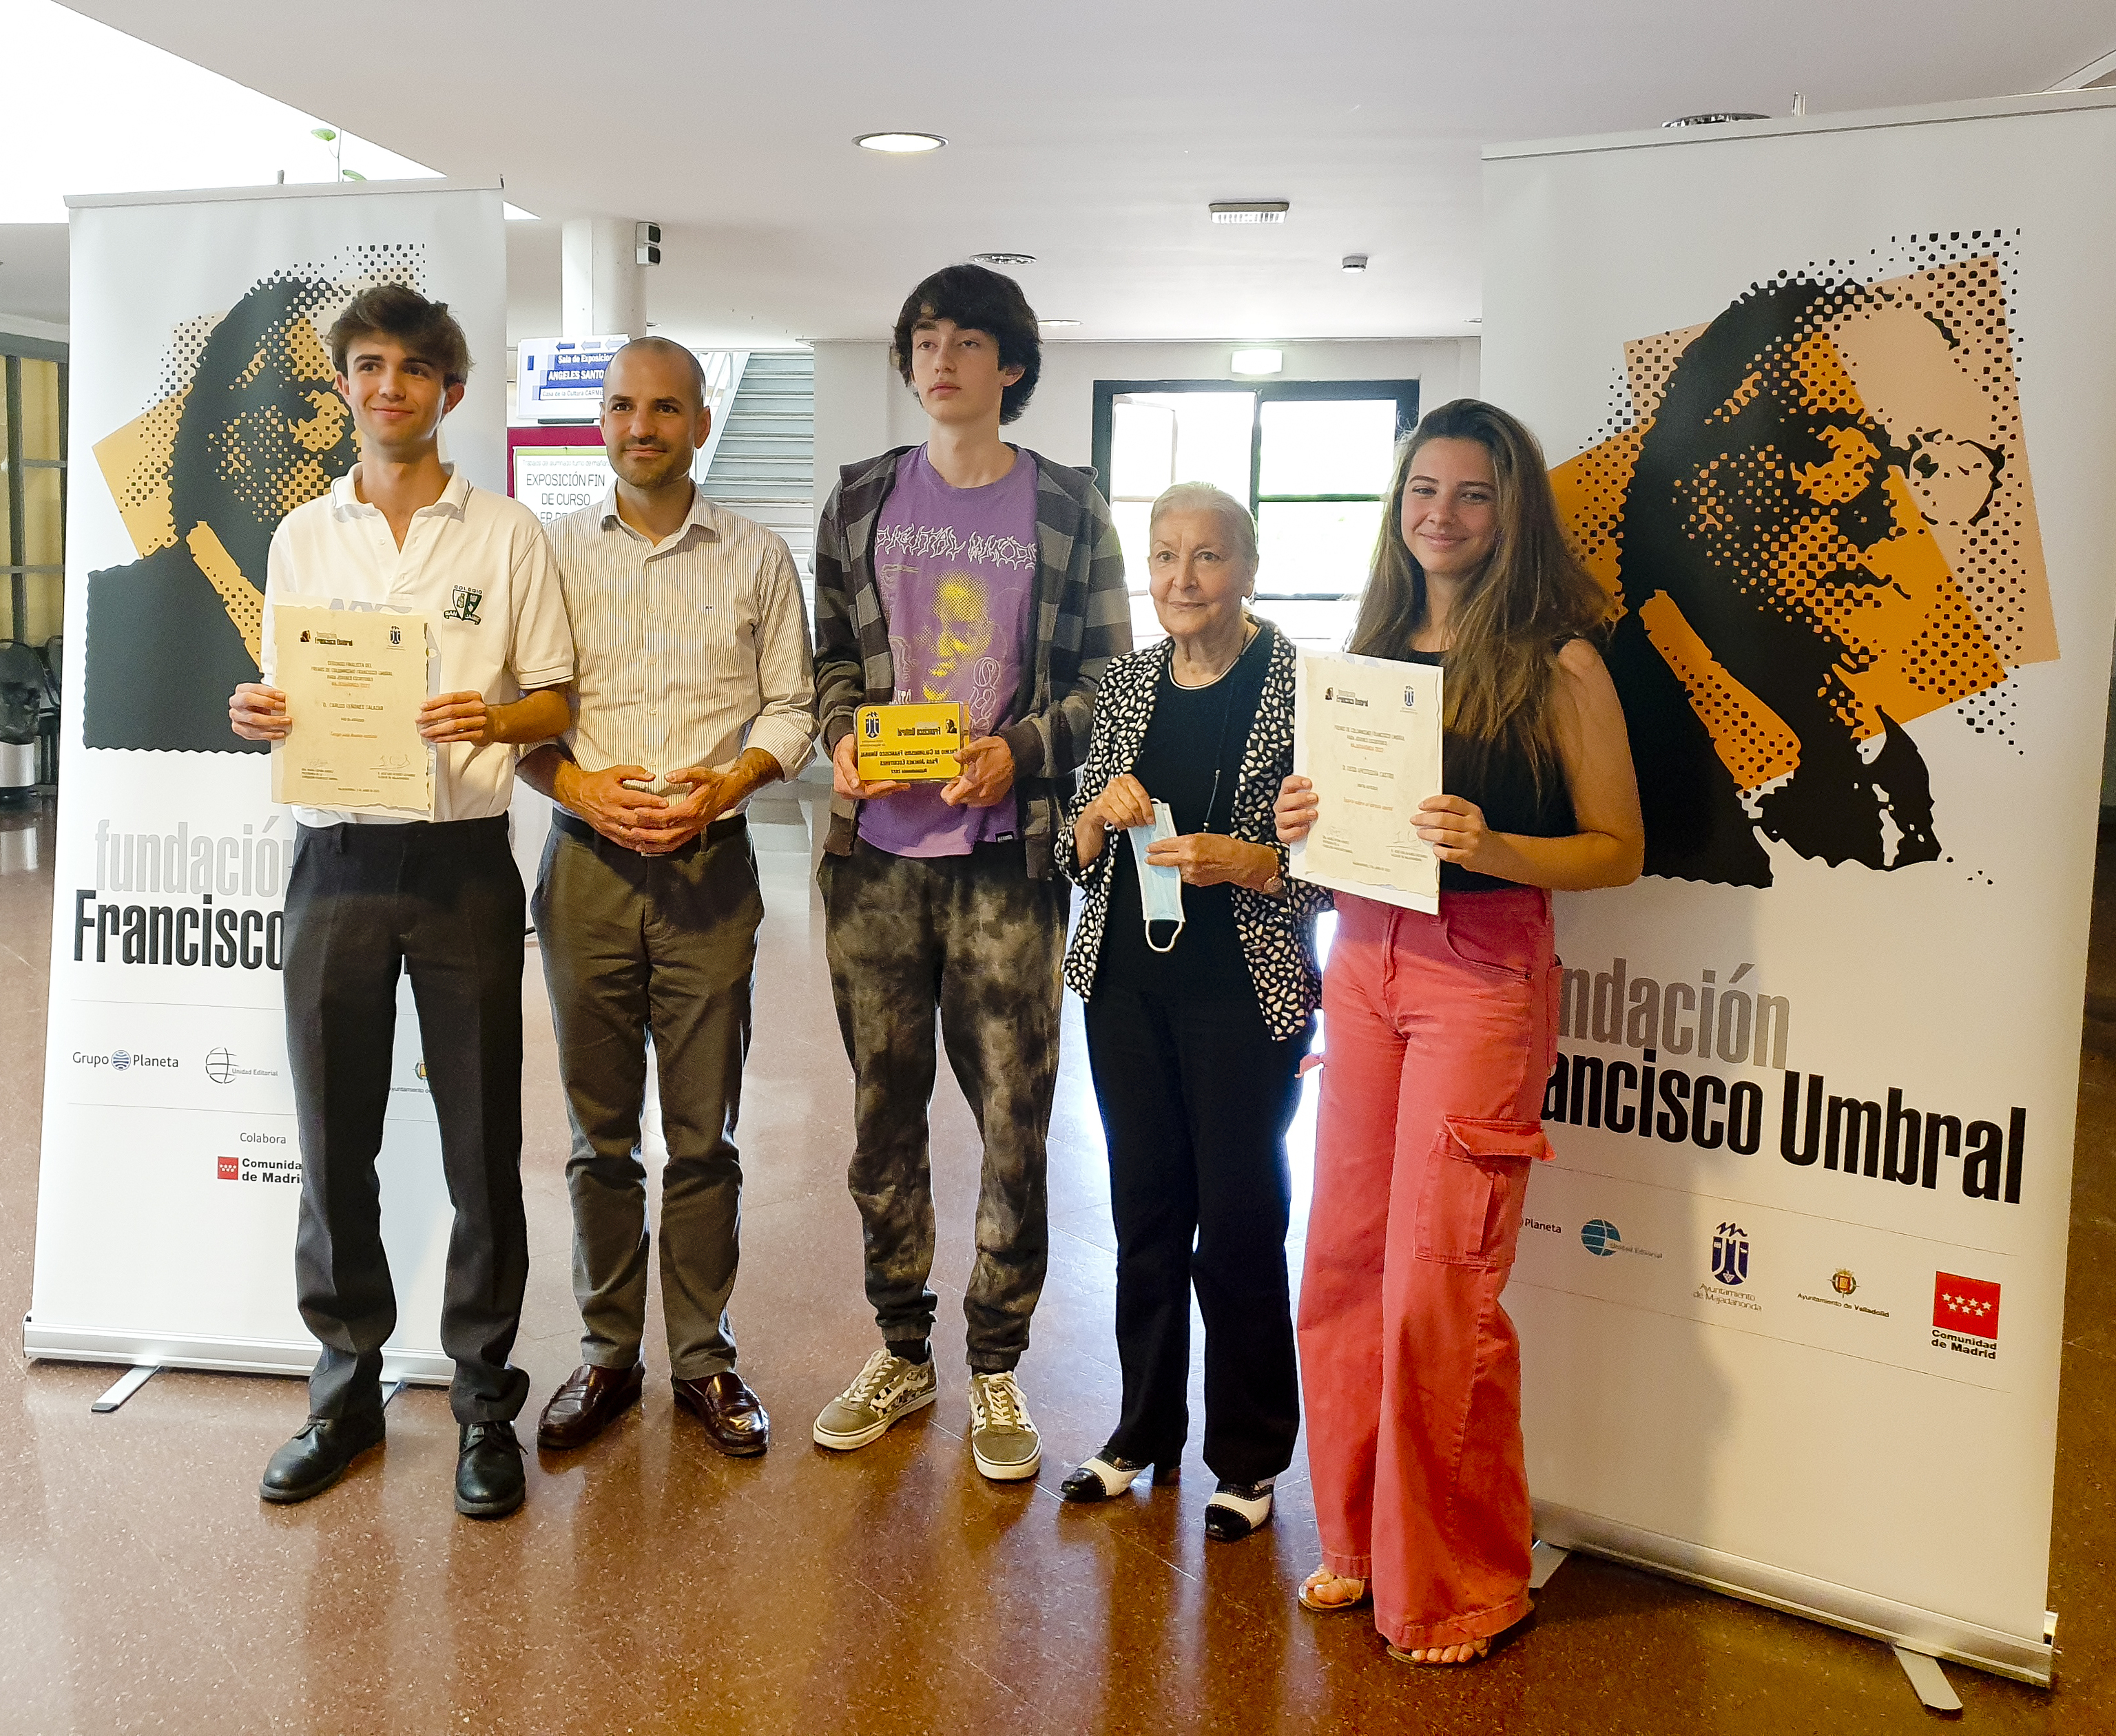 Diego Apesteguía, Premio de columnismo Francisco Umbral para jóvenes escritores